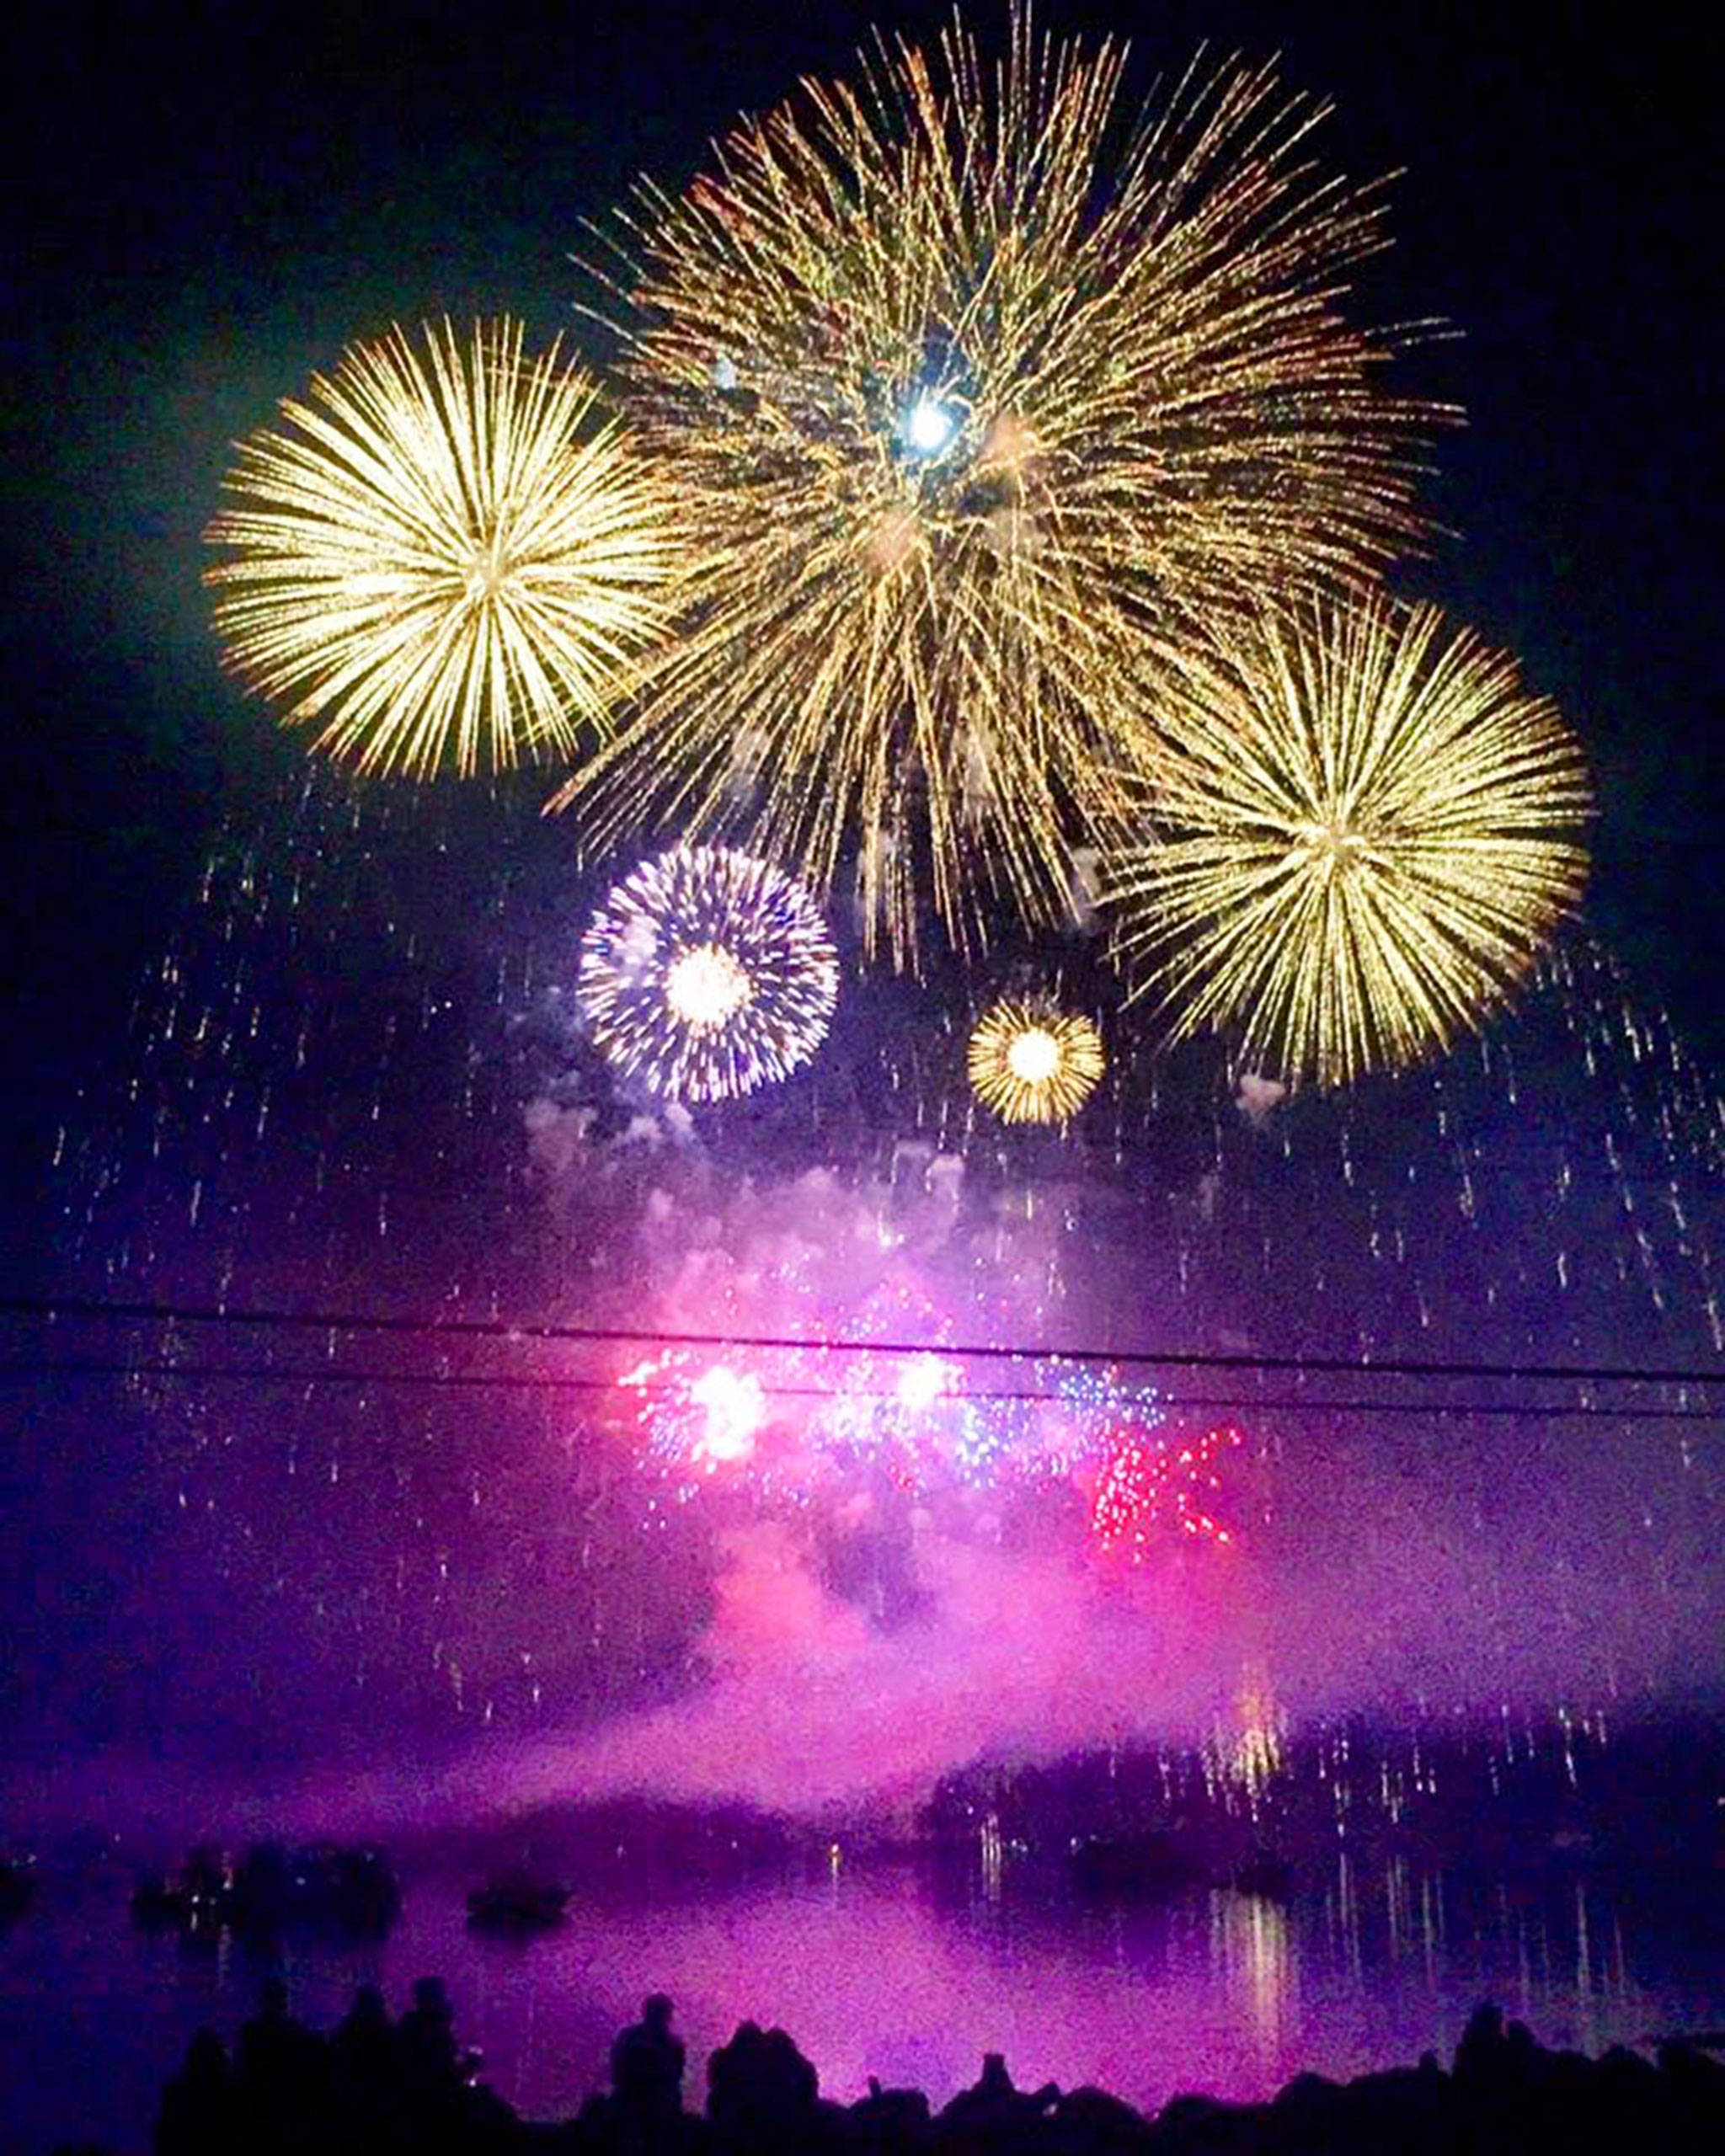 Fireworks display over Quartermaster Harbor (Wes York Photo)